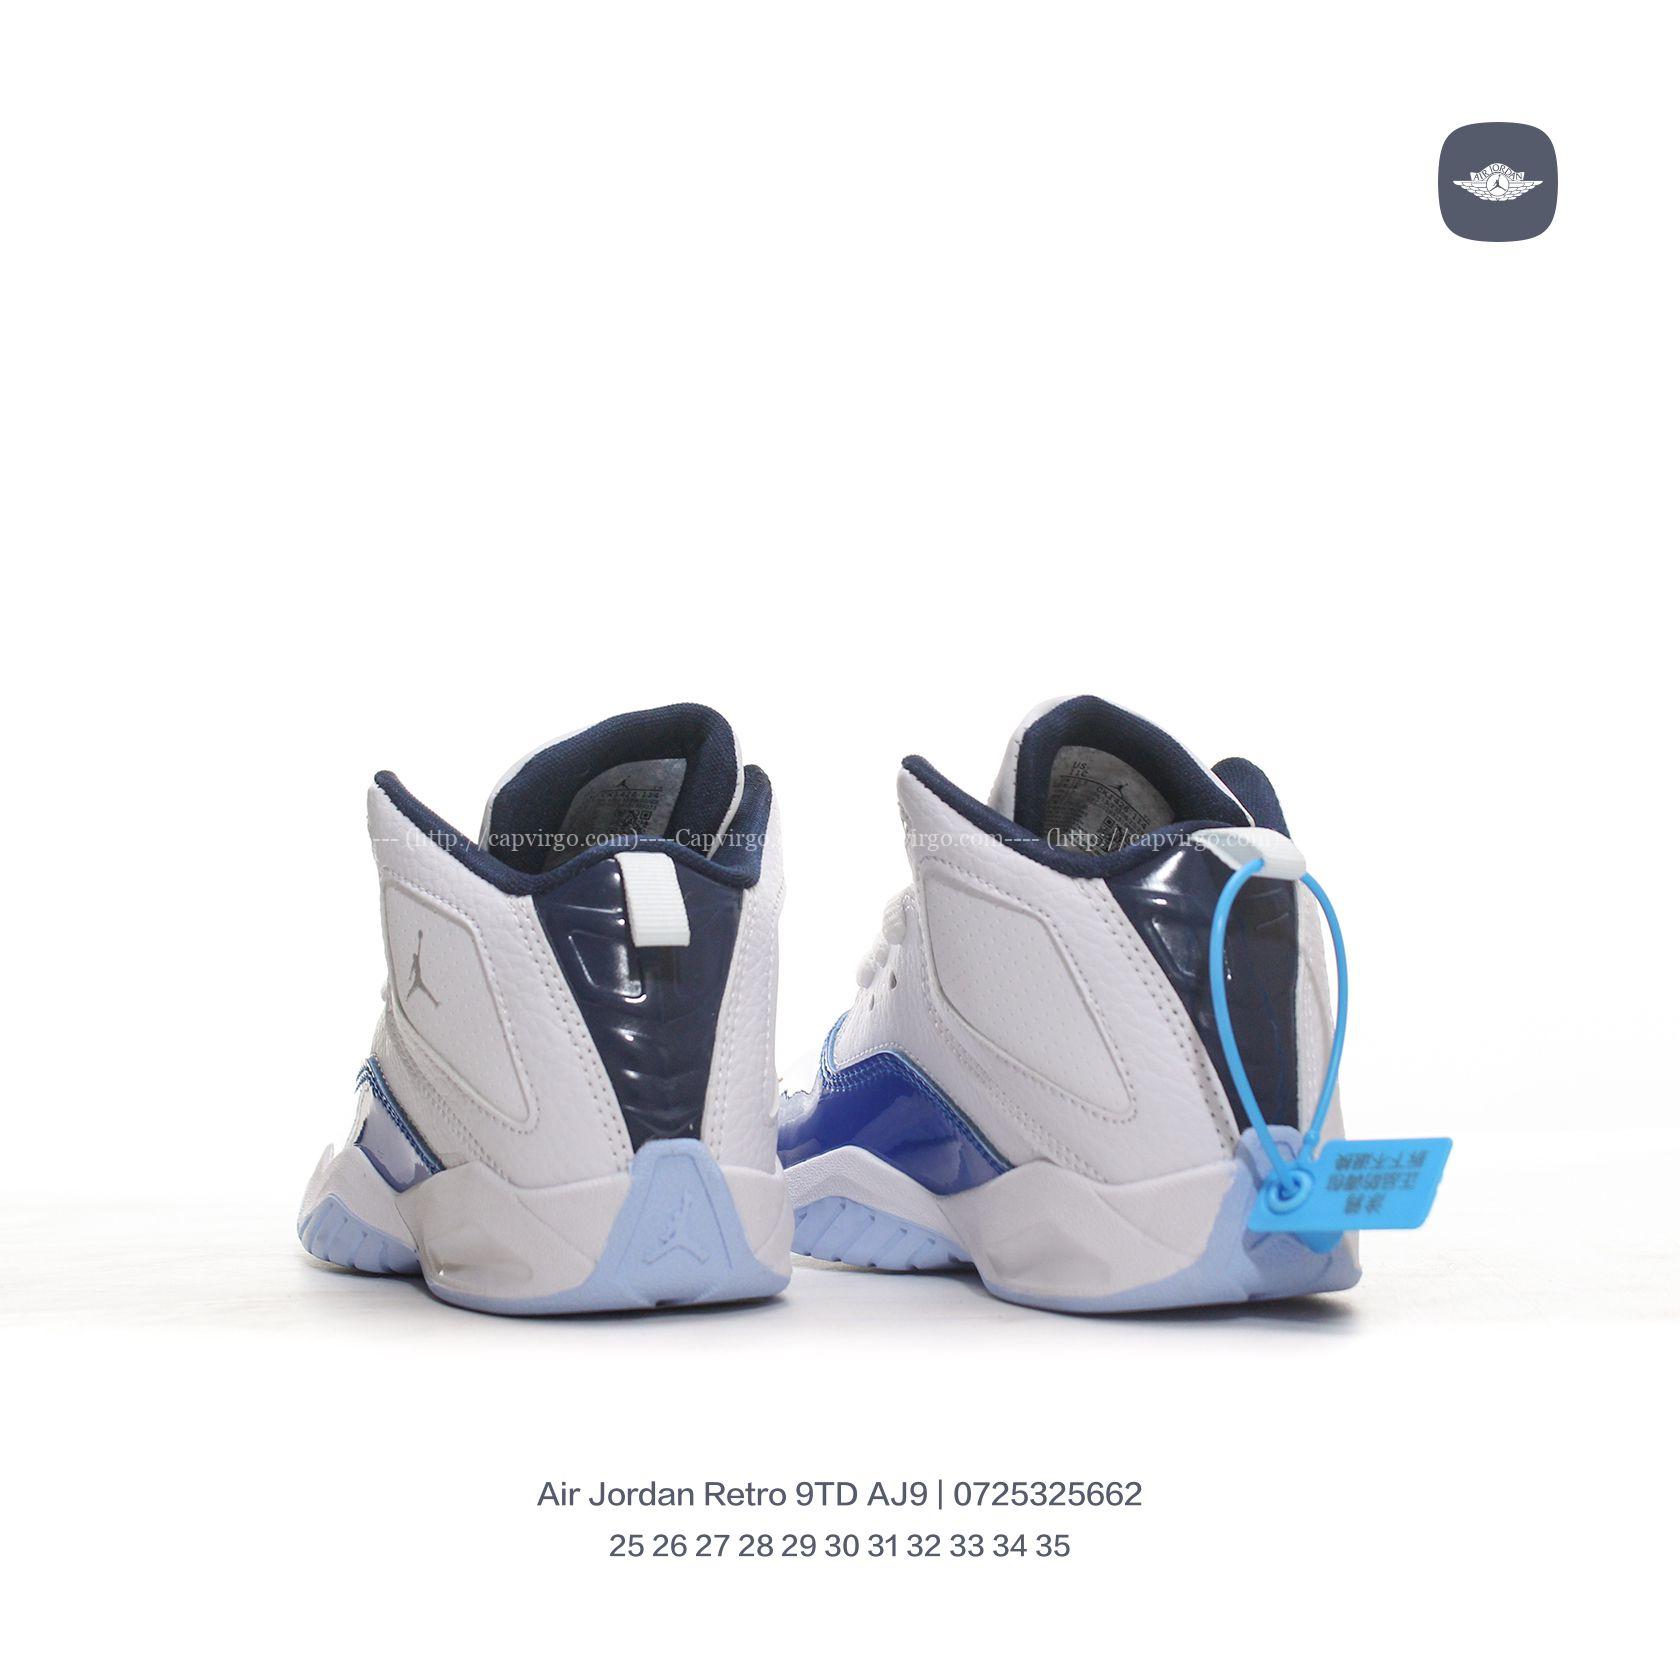 Giày Air Jordan Retro 9 AJ9 trẻ em màu trắng mũi xanh